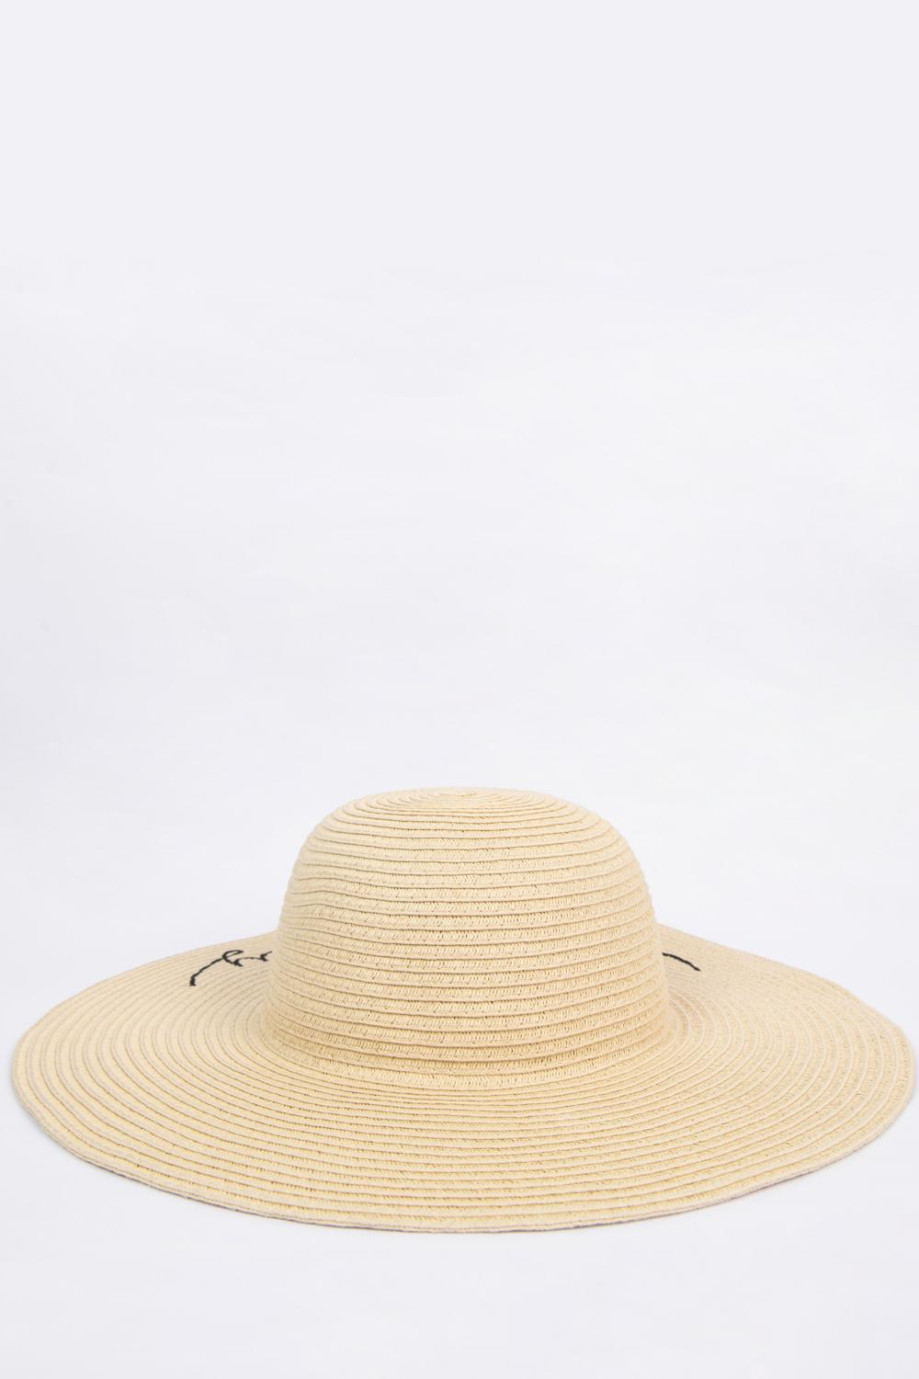 Sombrero crema claro con bordado y ala ancha